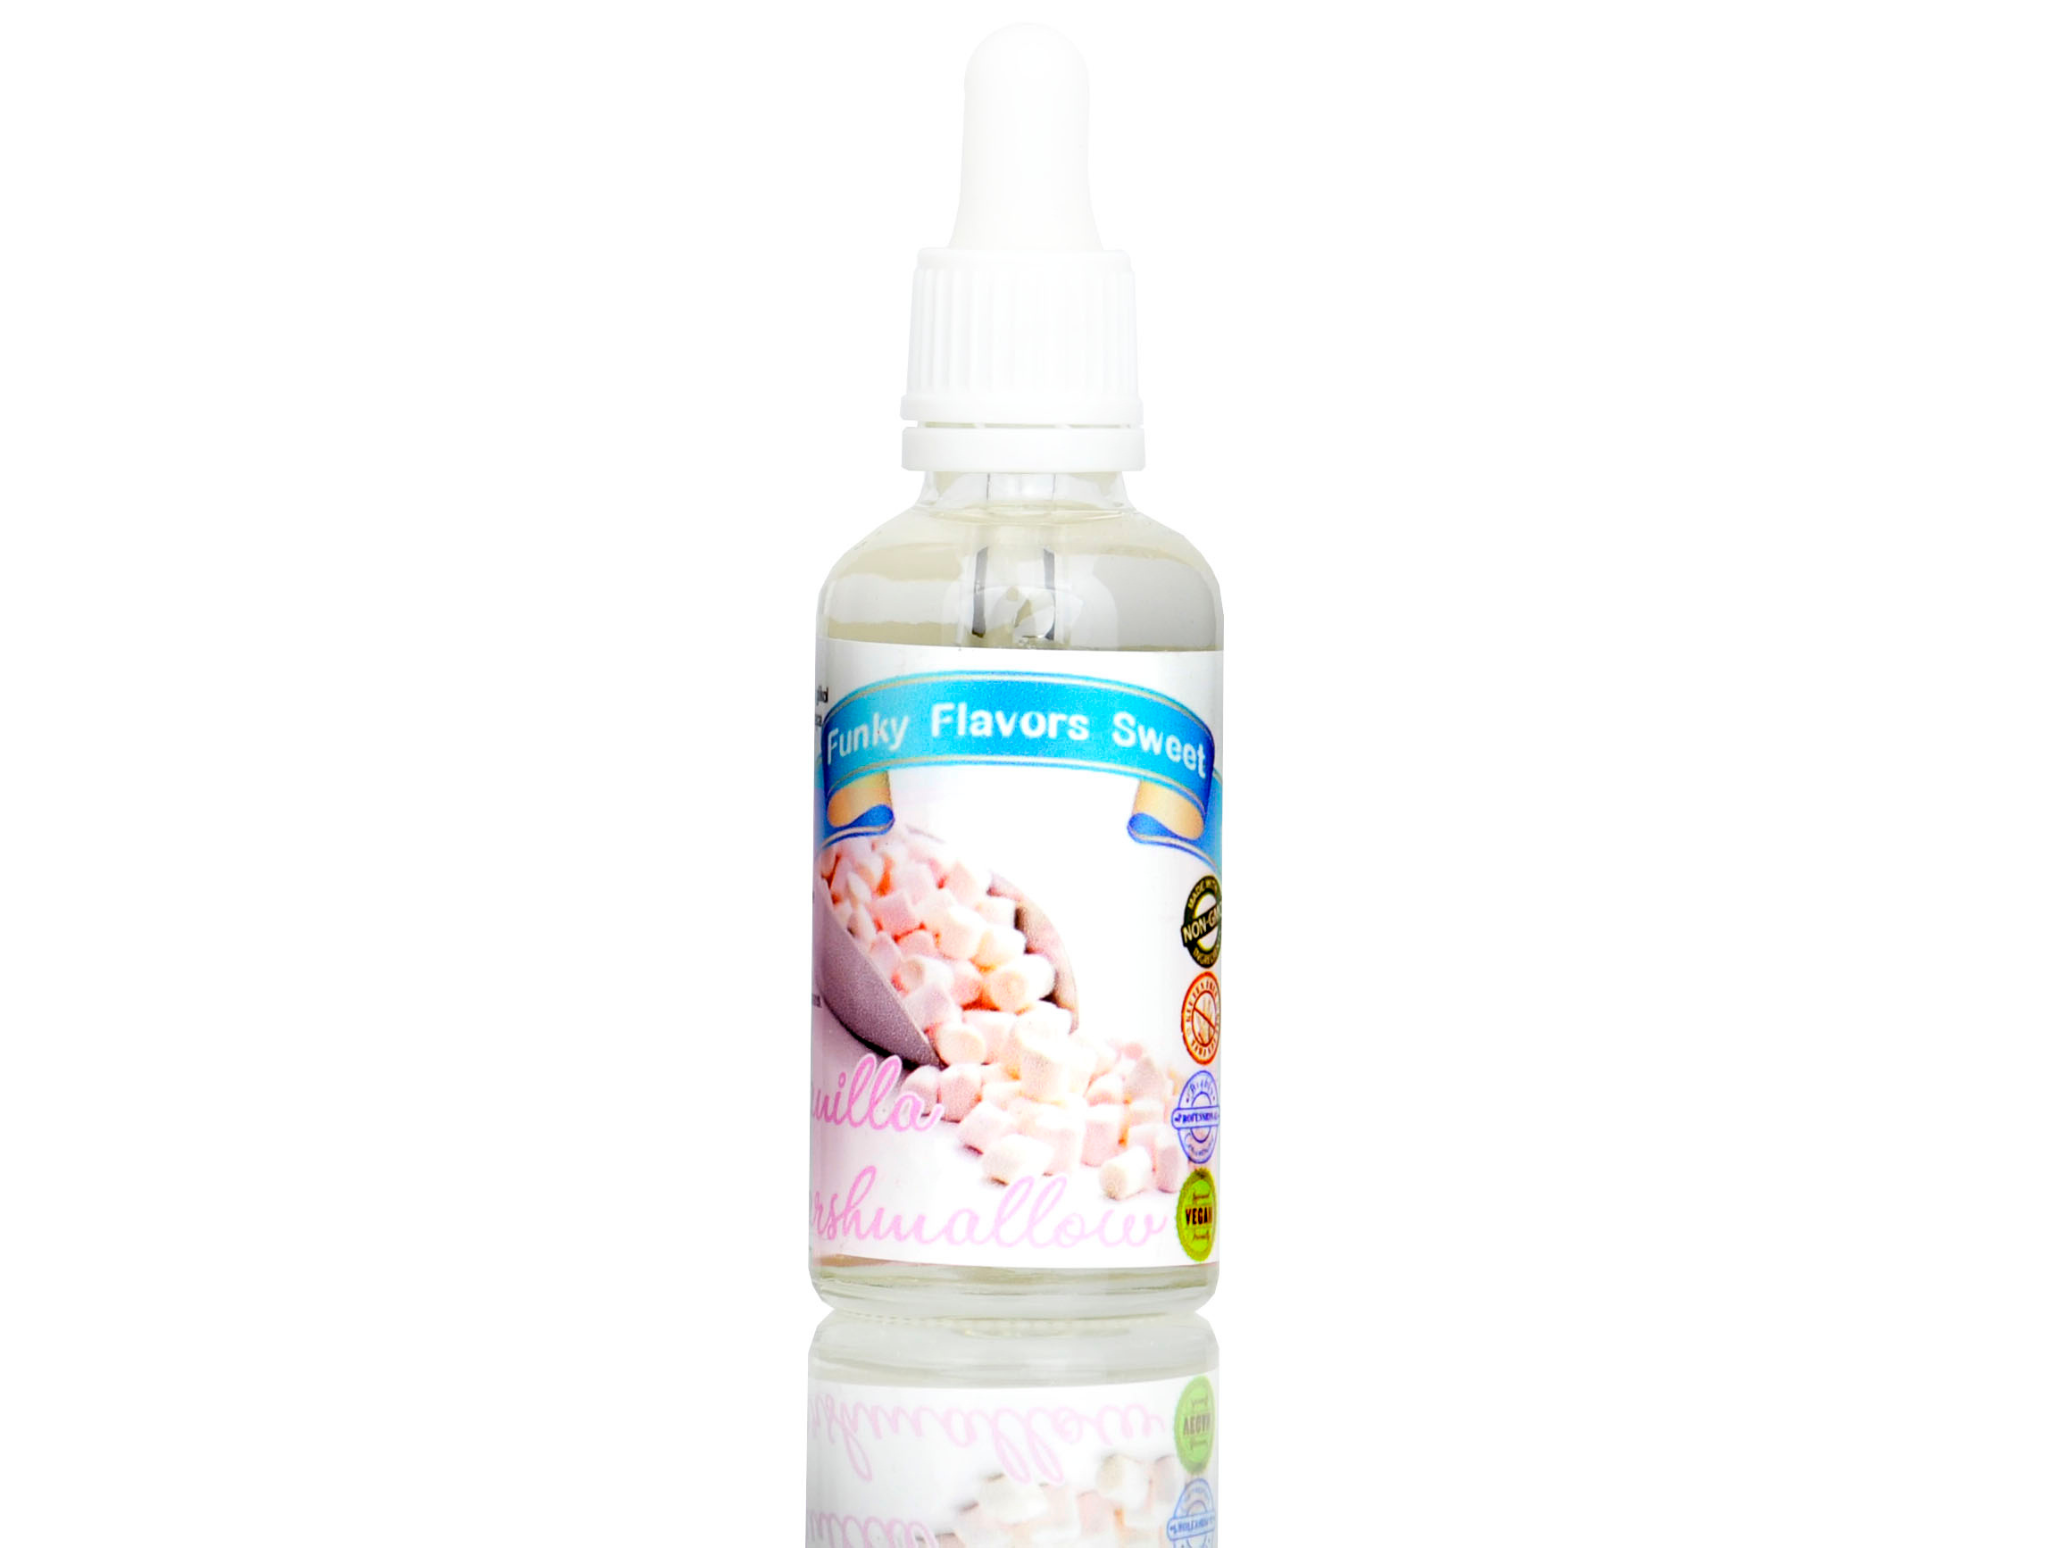 Aromat Funky Flavors Sweet Vanilla Marshmallow – recenzja